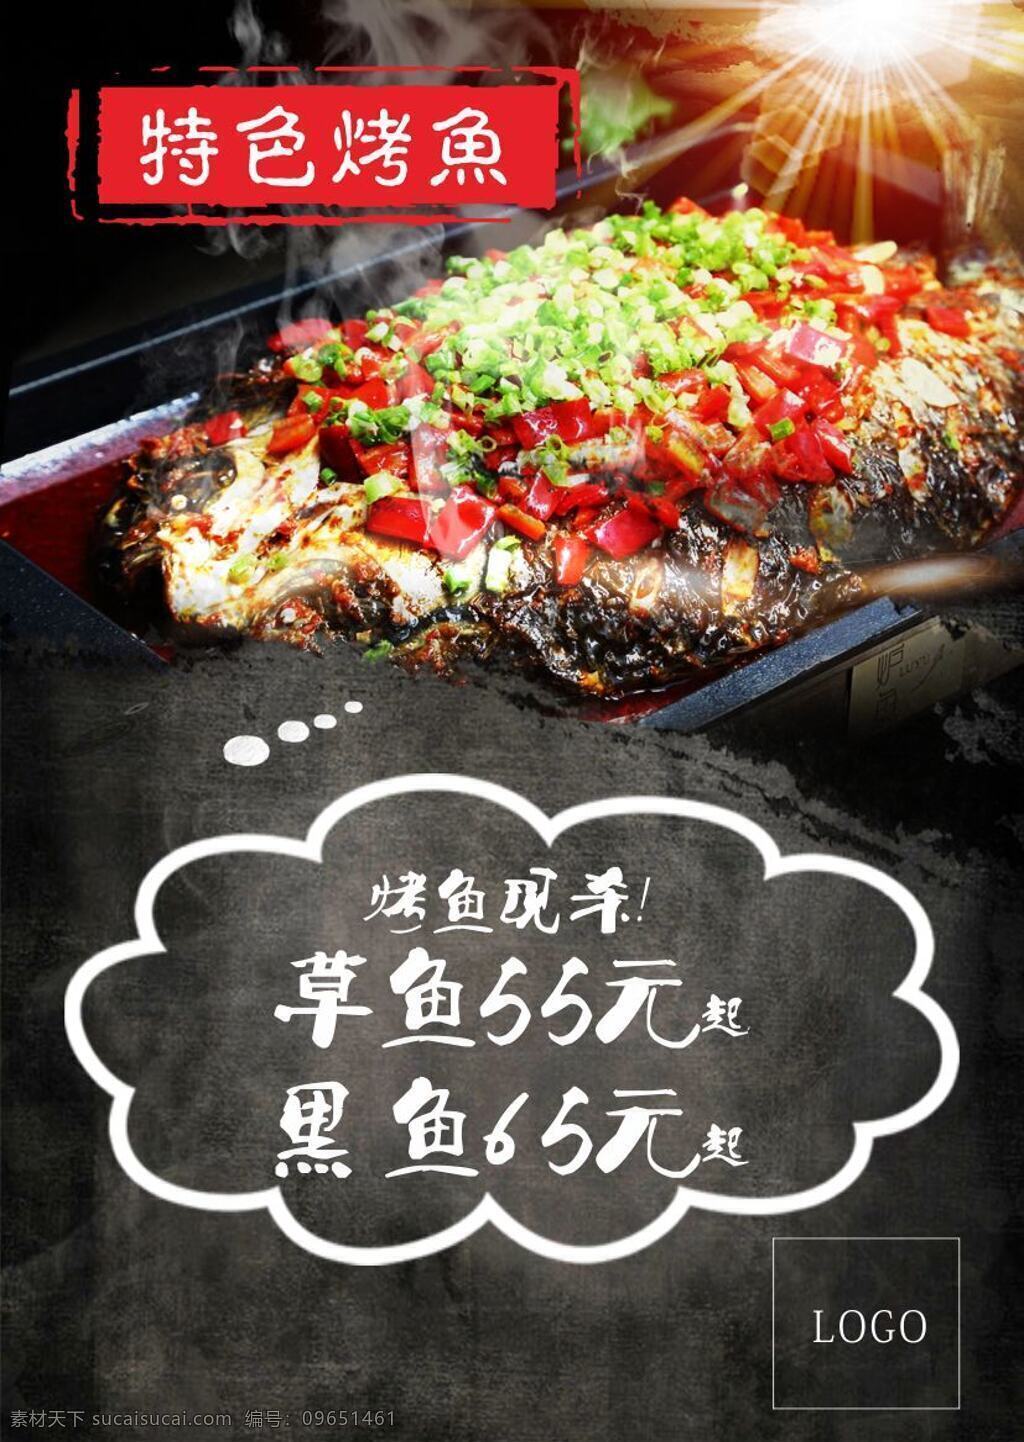 特色烤鱼海报 特色 烤鱼 海报 鱼 排版 辣椒 黑板